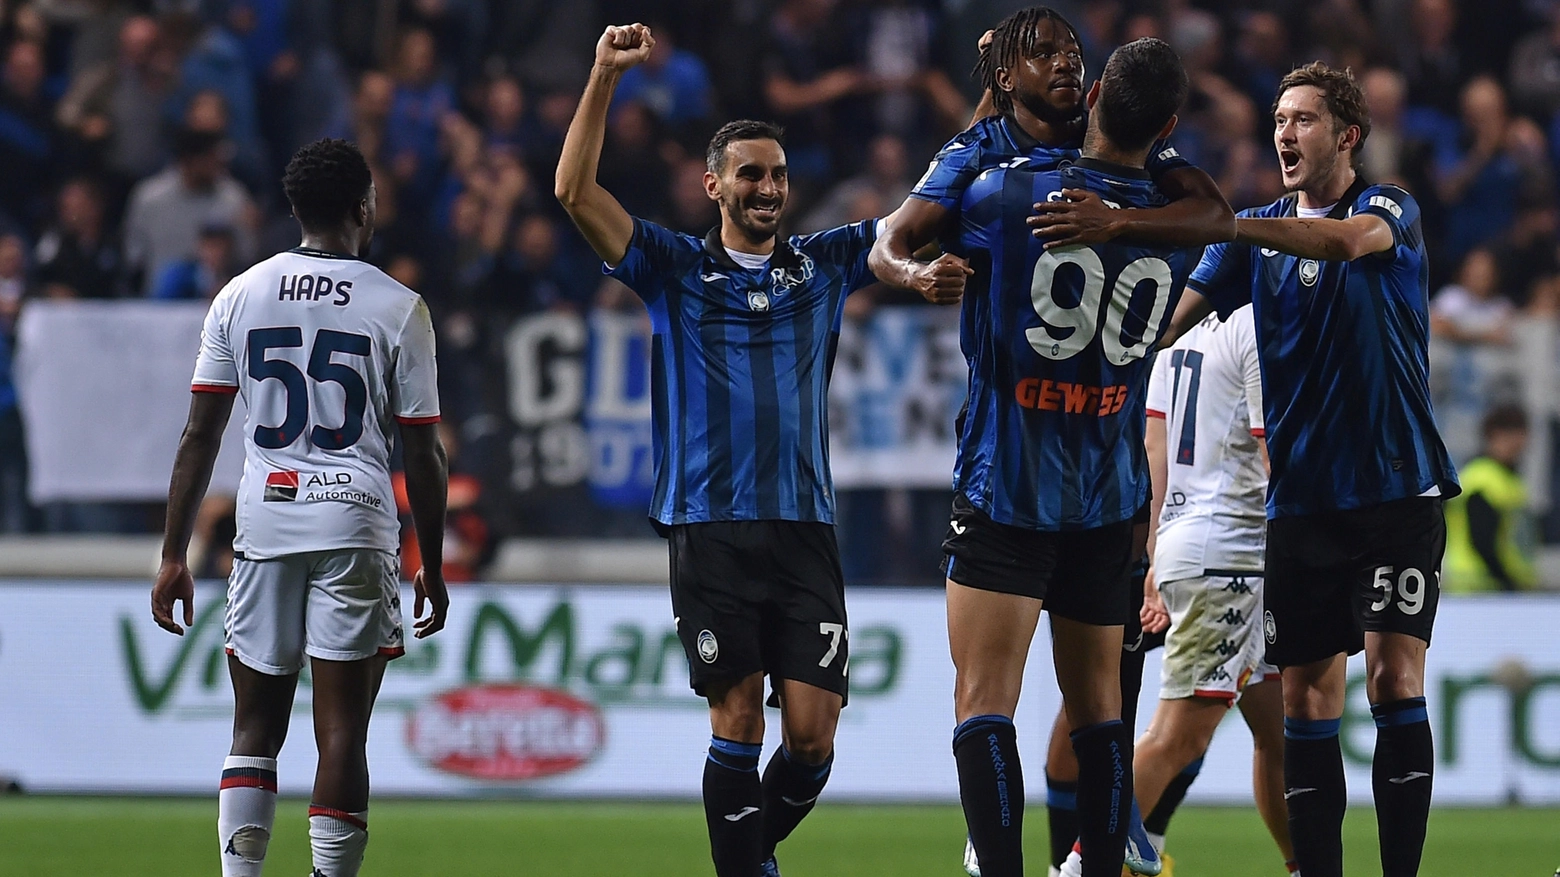 Quarta vittoria in cinque gare casalinghe per la squadra di Gasperini, con un pareggio contro la Juventus, e quinta gara interna su cinque senza subire gol al Gewiss Stadium